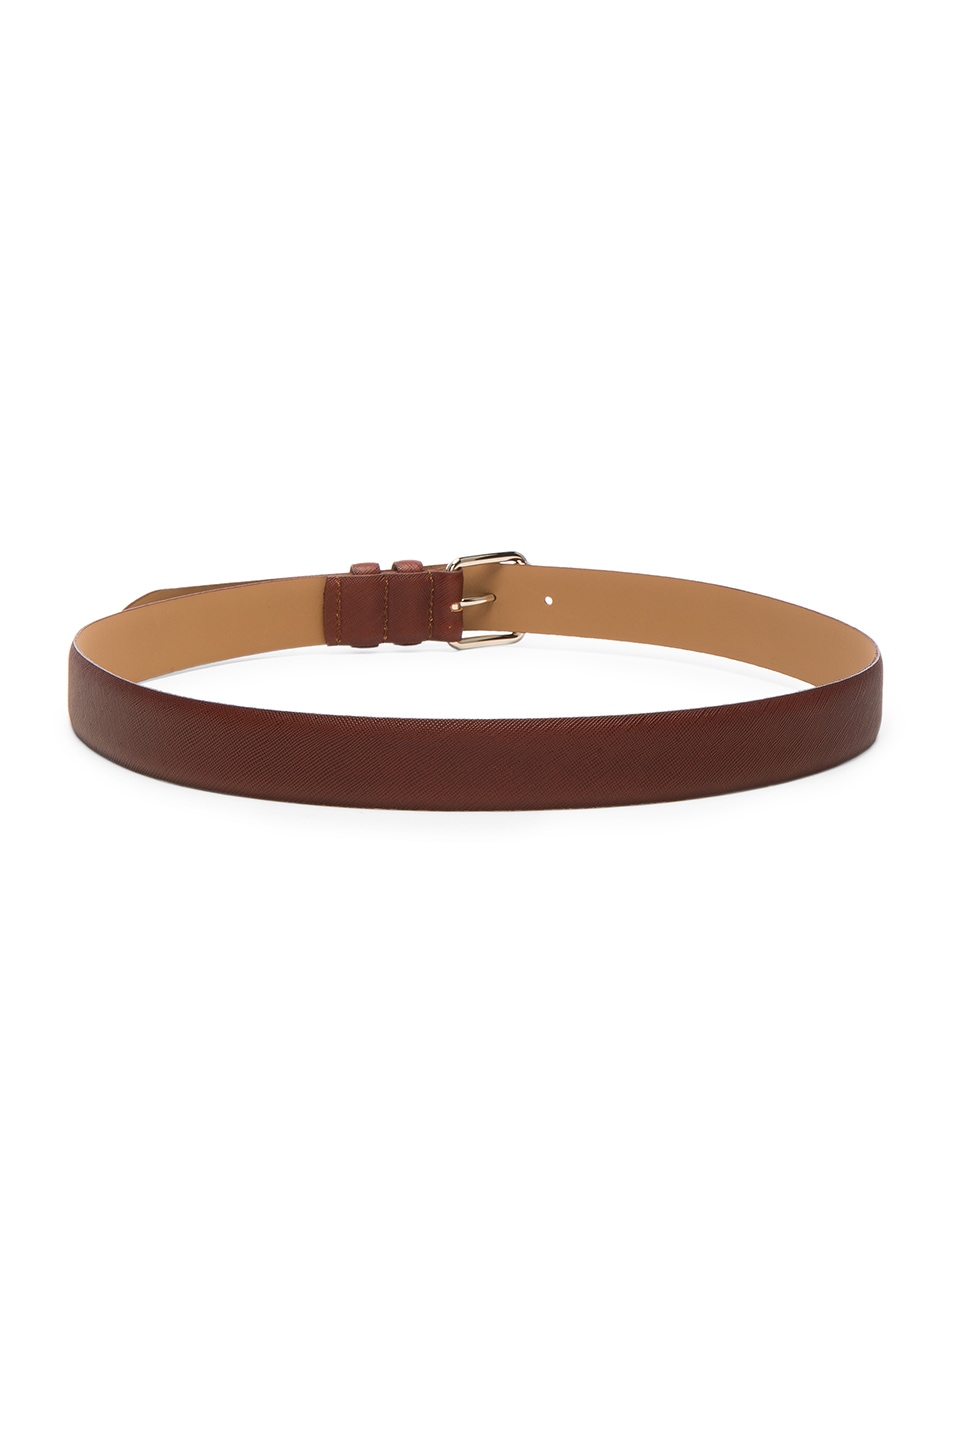 A.P.C. Paris Pebbled-Leather Belt, Colour: Ebony-Brown | ModeSens